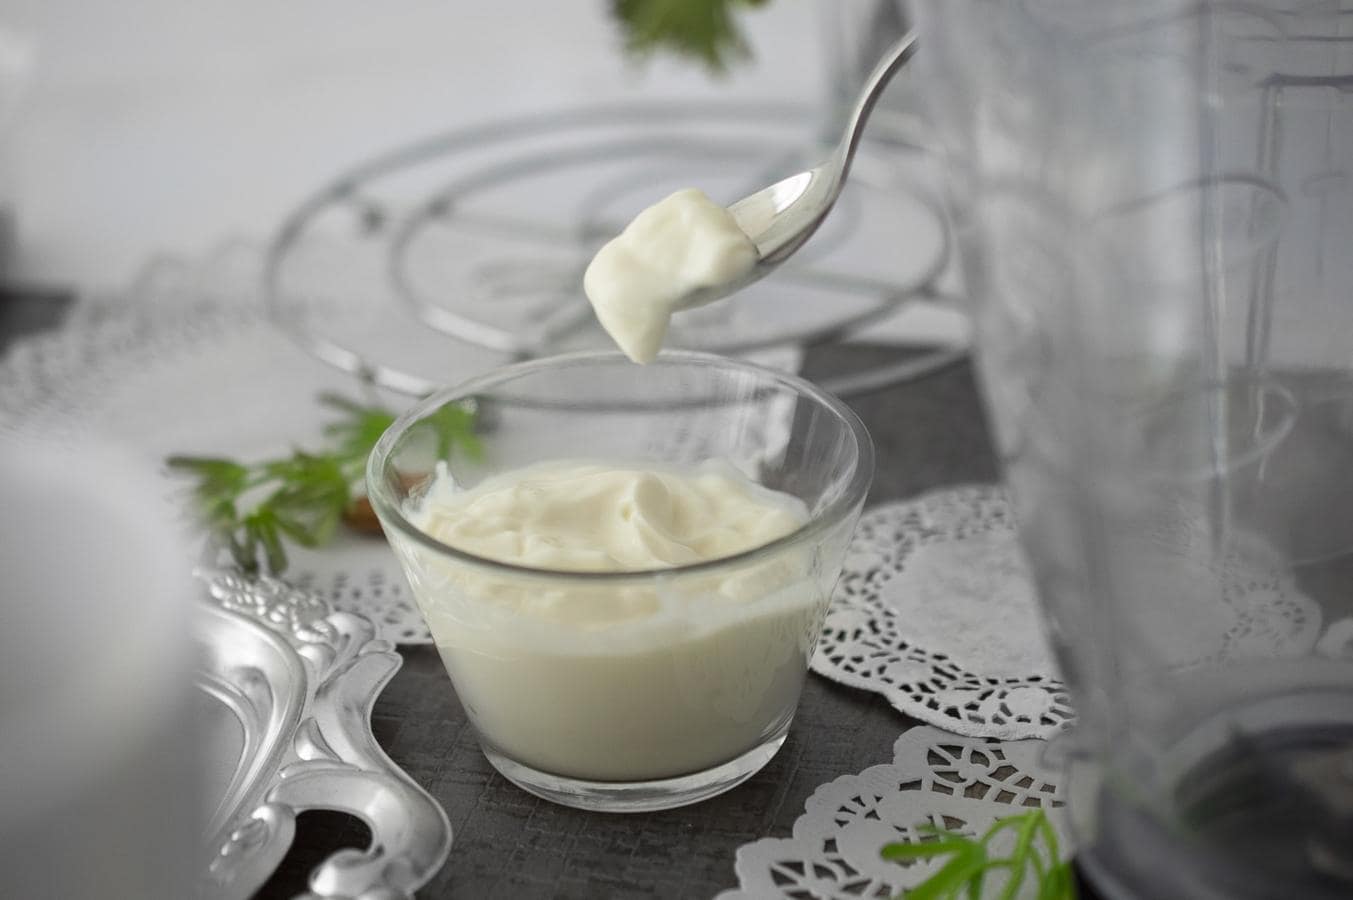 Yogurt griego